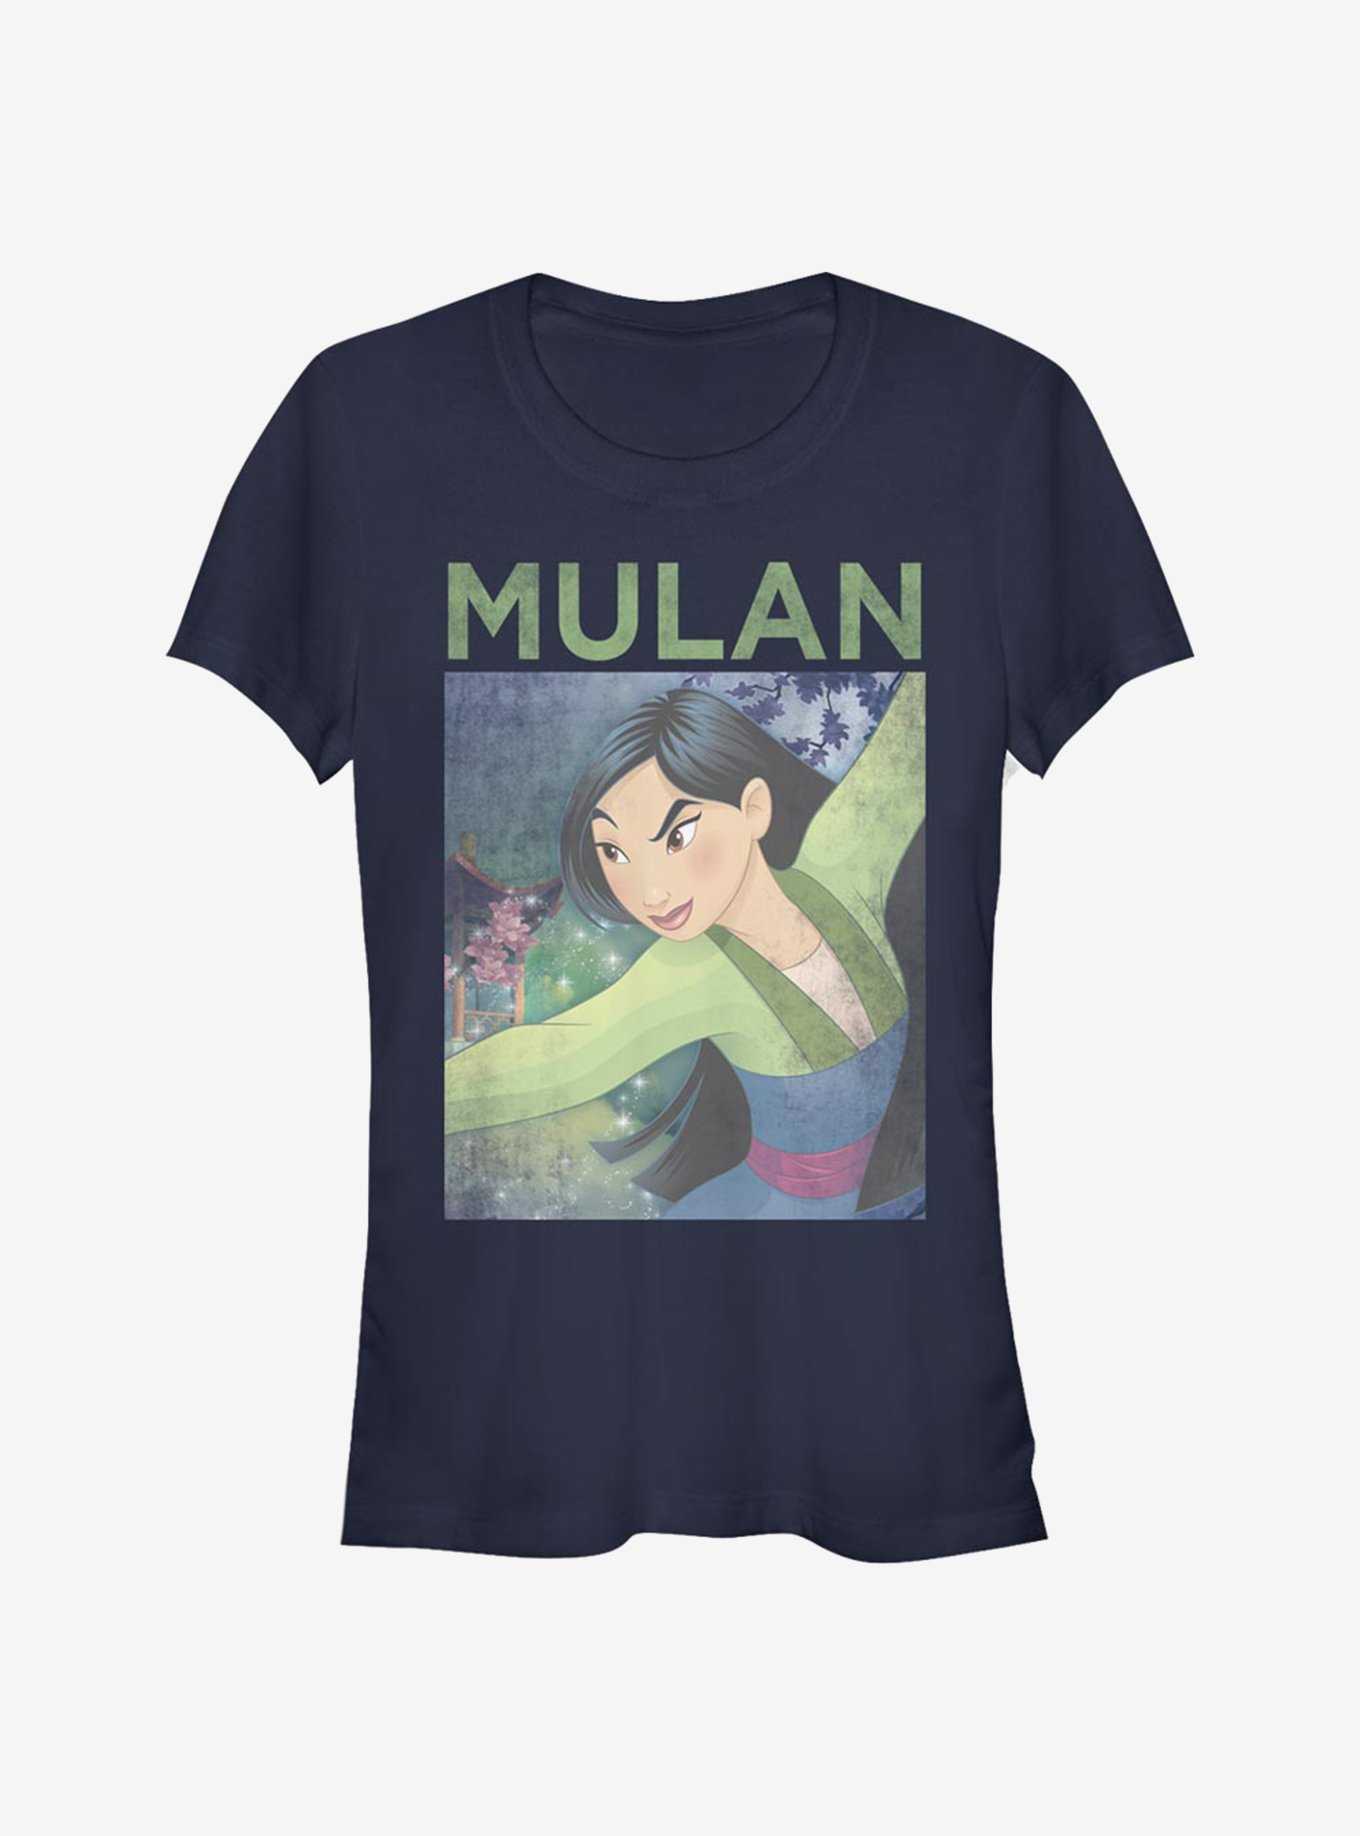 Disney Mulan Poster Girls T-Shirt, , hi-res